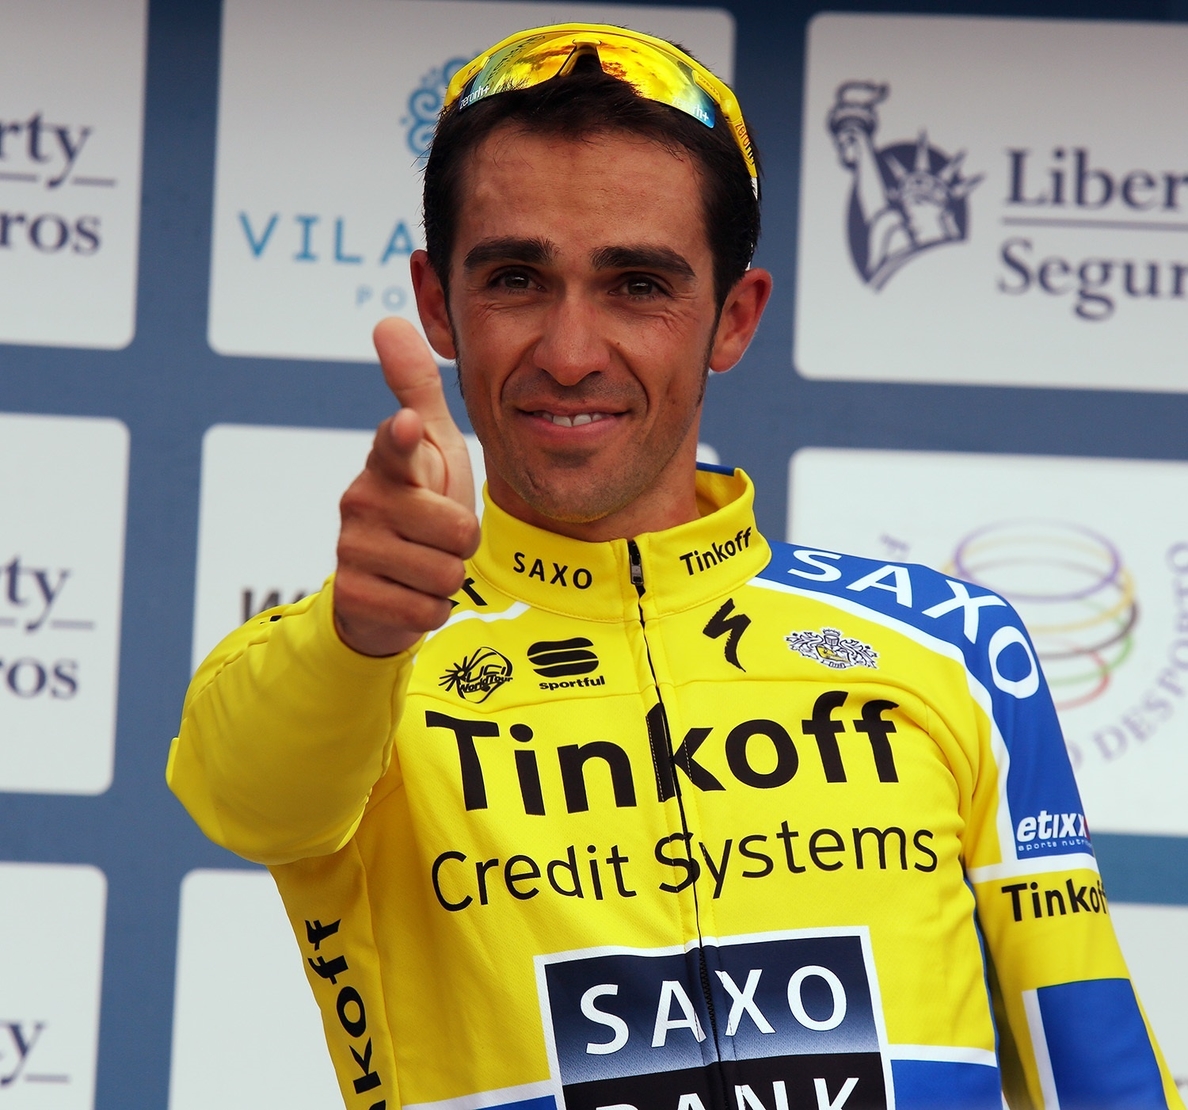 Un Tour de 2015, a la medida de Alberto Contador y los demás escaladores